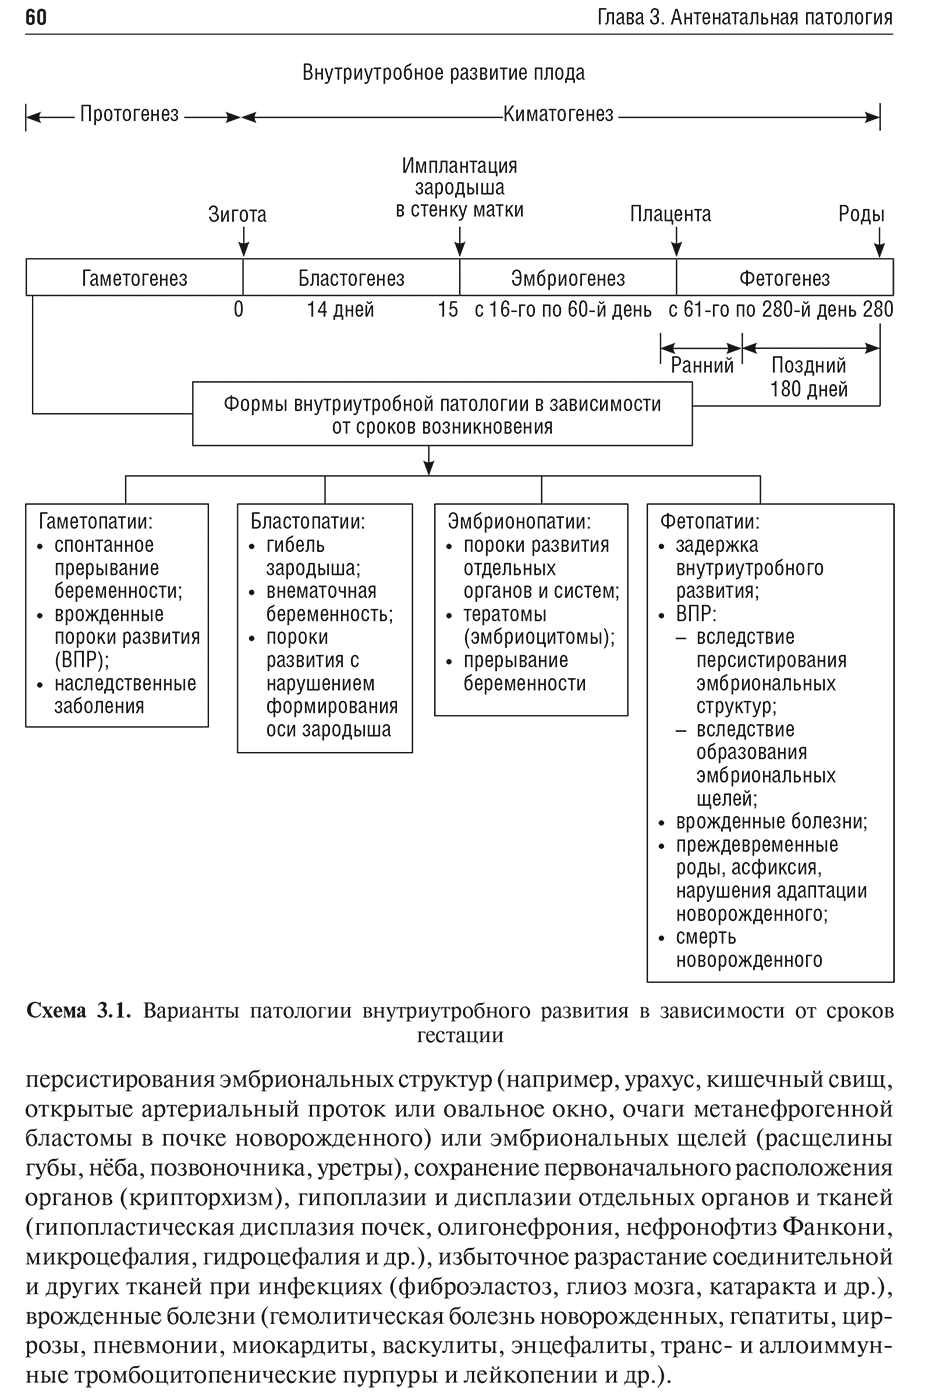 Схема 3.1. Варианты патологии внутриутробного развития в зависимости от сроков гестации